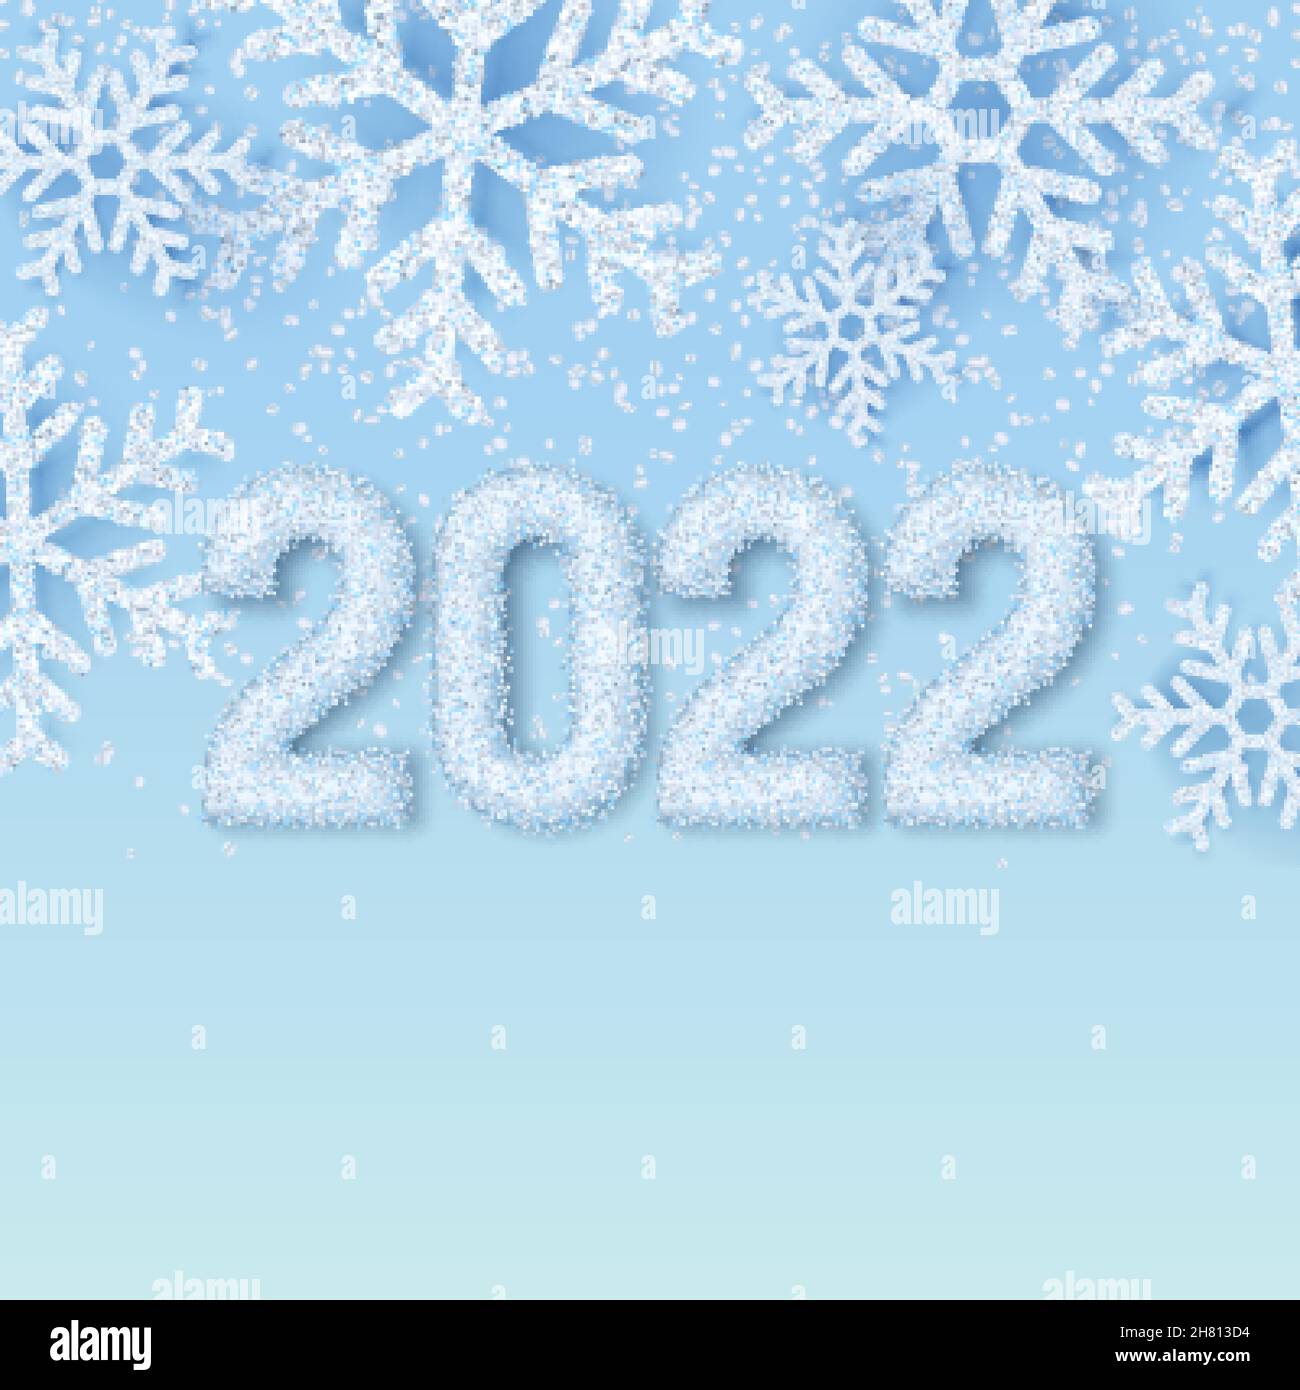 Feliz Año Nuevo 2022 números de nieve blanca en invierno abstracto fondo azul con copos de nieve realistas. Elegante pancarta, póster, tarjeta de felicitación Ilustración del Vector